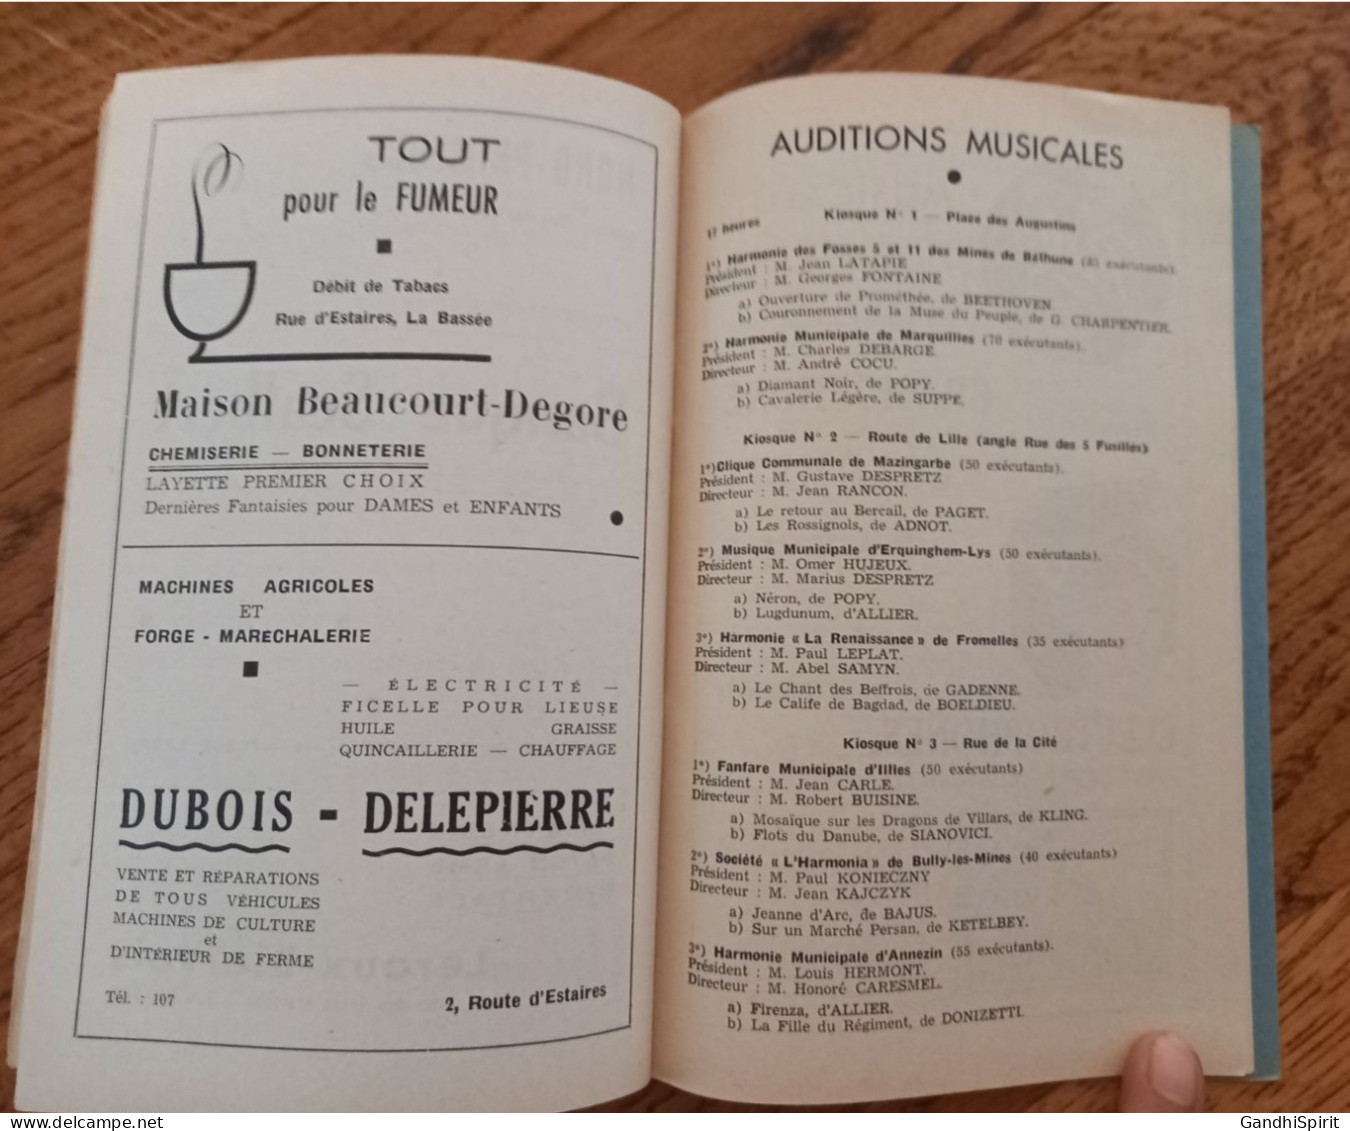 La Bassée - Grand Festival International de Musique 1952 Programme, Brochure Souvenir Pubs Cycles, Bières, Citroen...